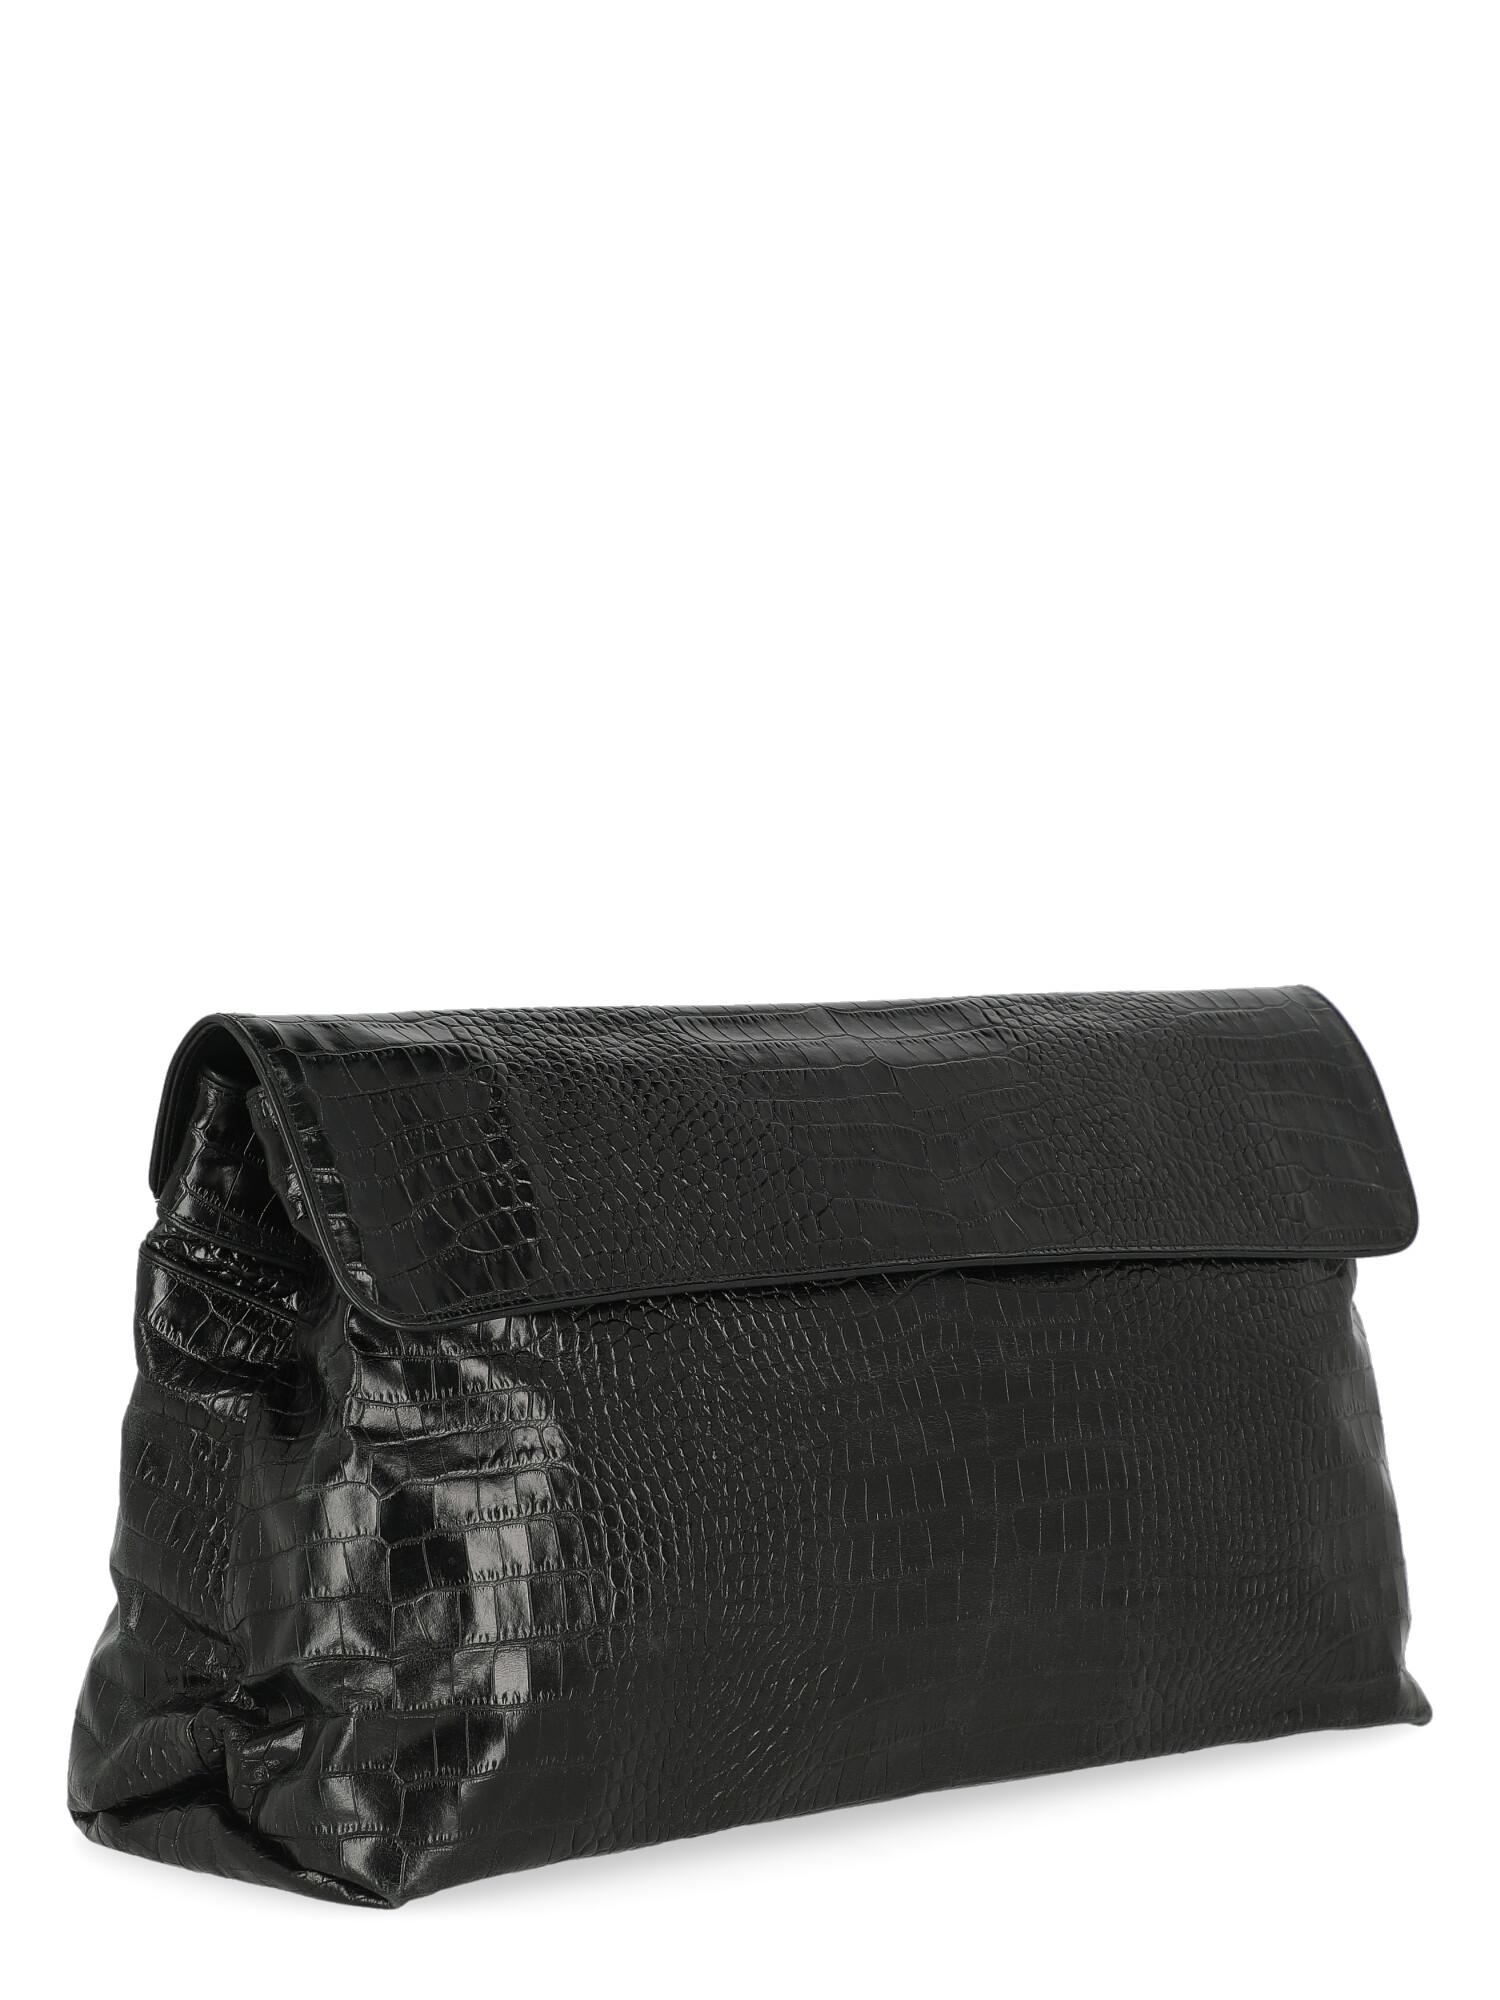 Dries Van Noten Women Handbags Black Leather  In Good Condition For Sale In Milan, IT